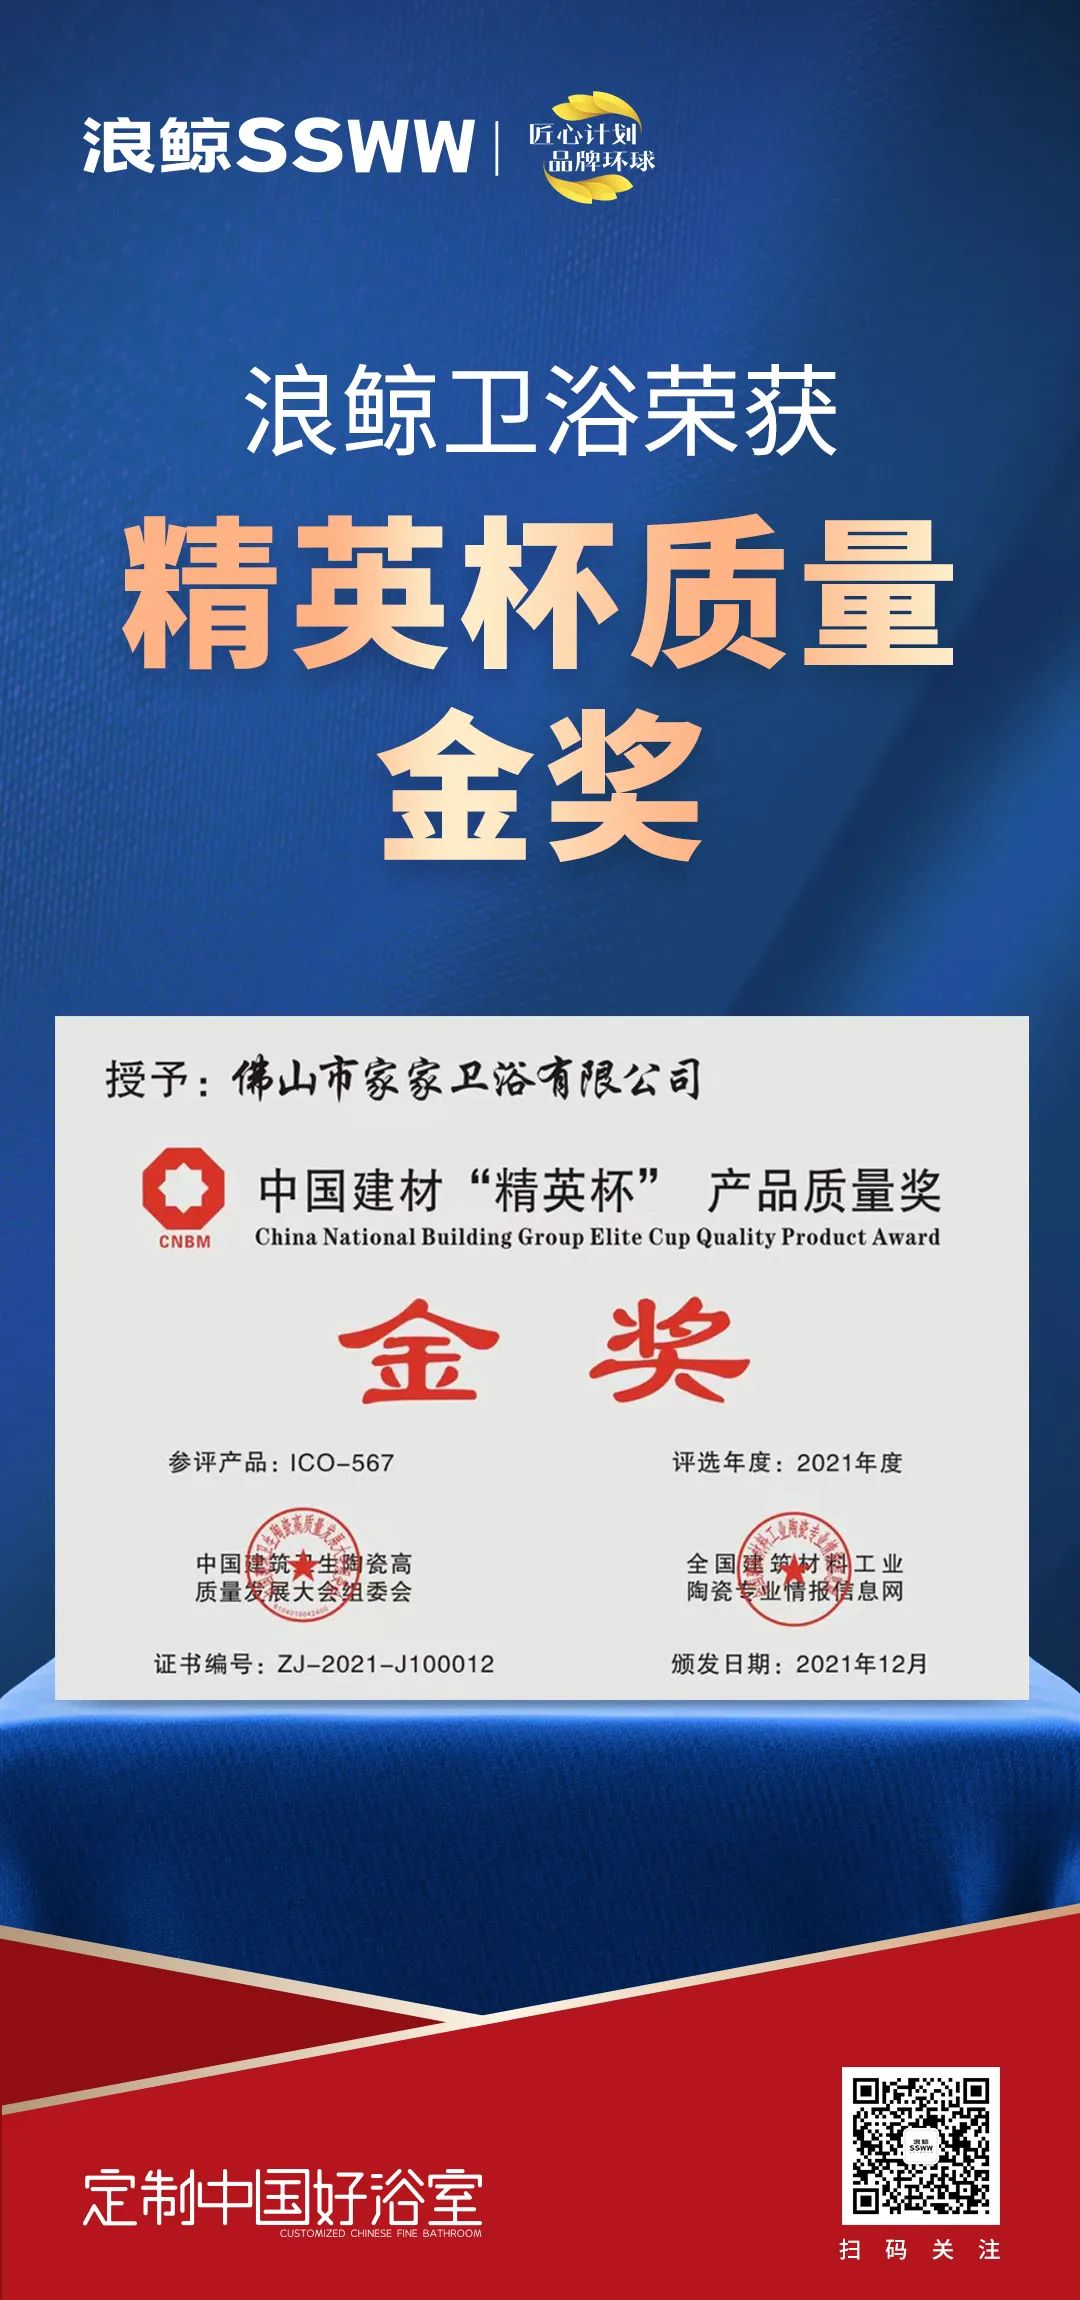 载誉而归！浪鲸卫浴揽获中国建筑卫生陶瓷行业科技大会两项大奖(图2)